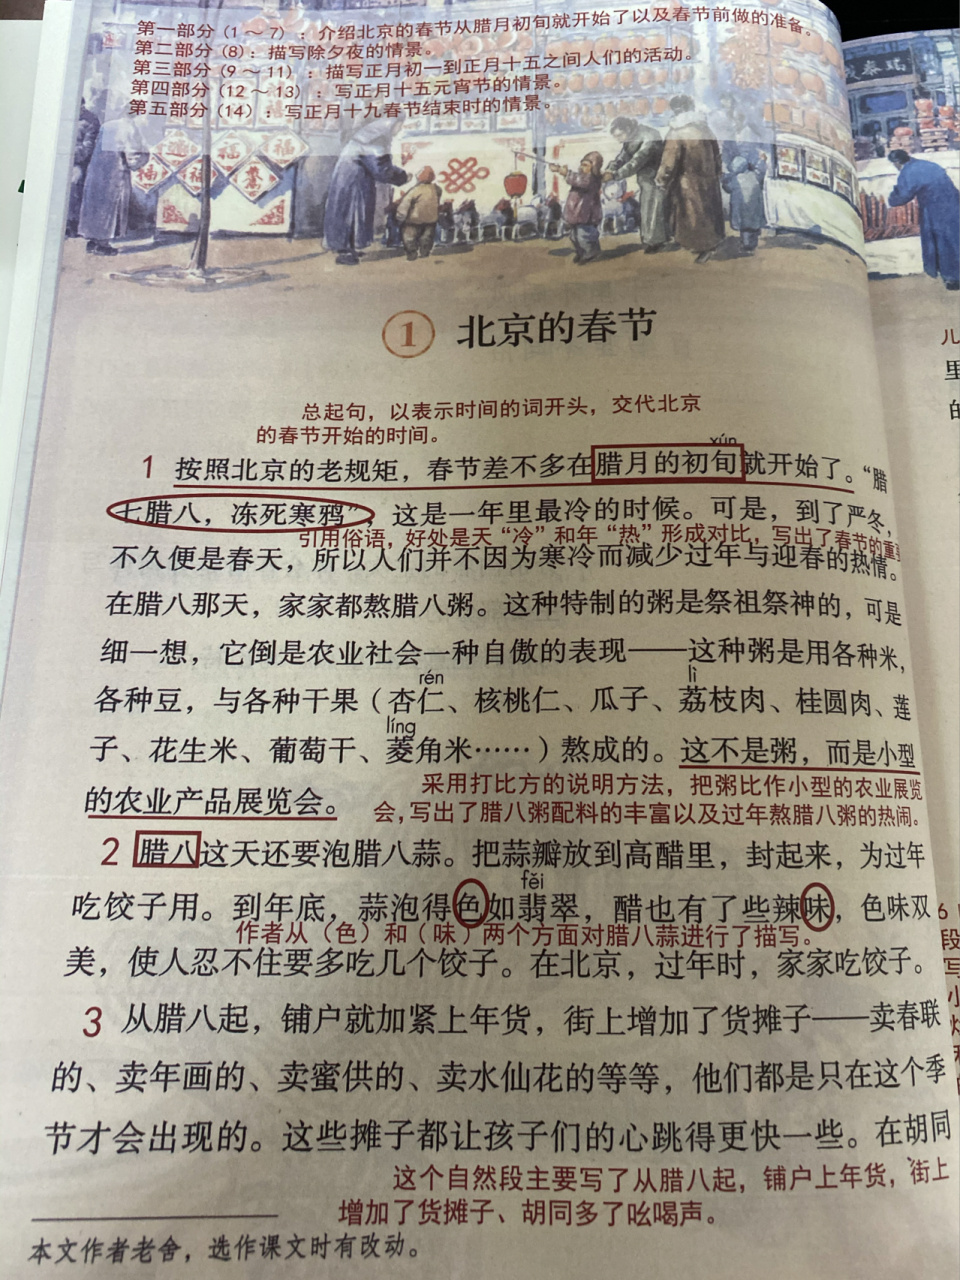 北京的春节的课堂笔记图片